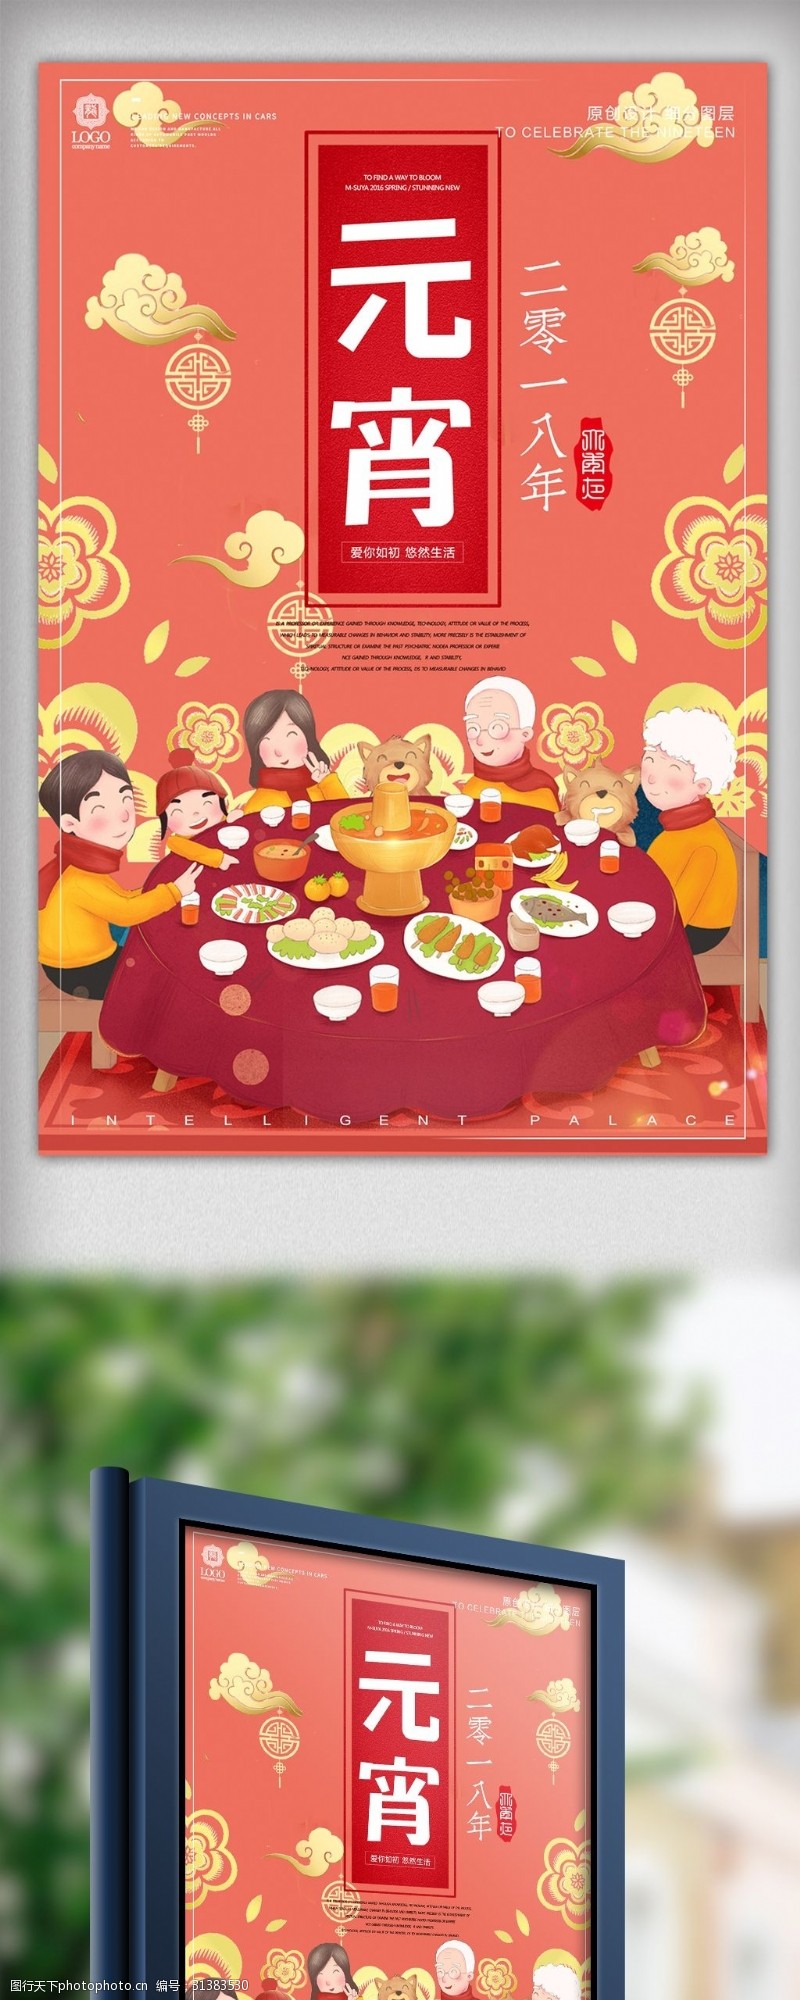 欢度元宵炫彩时尚元宵节宣传海报设计模板